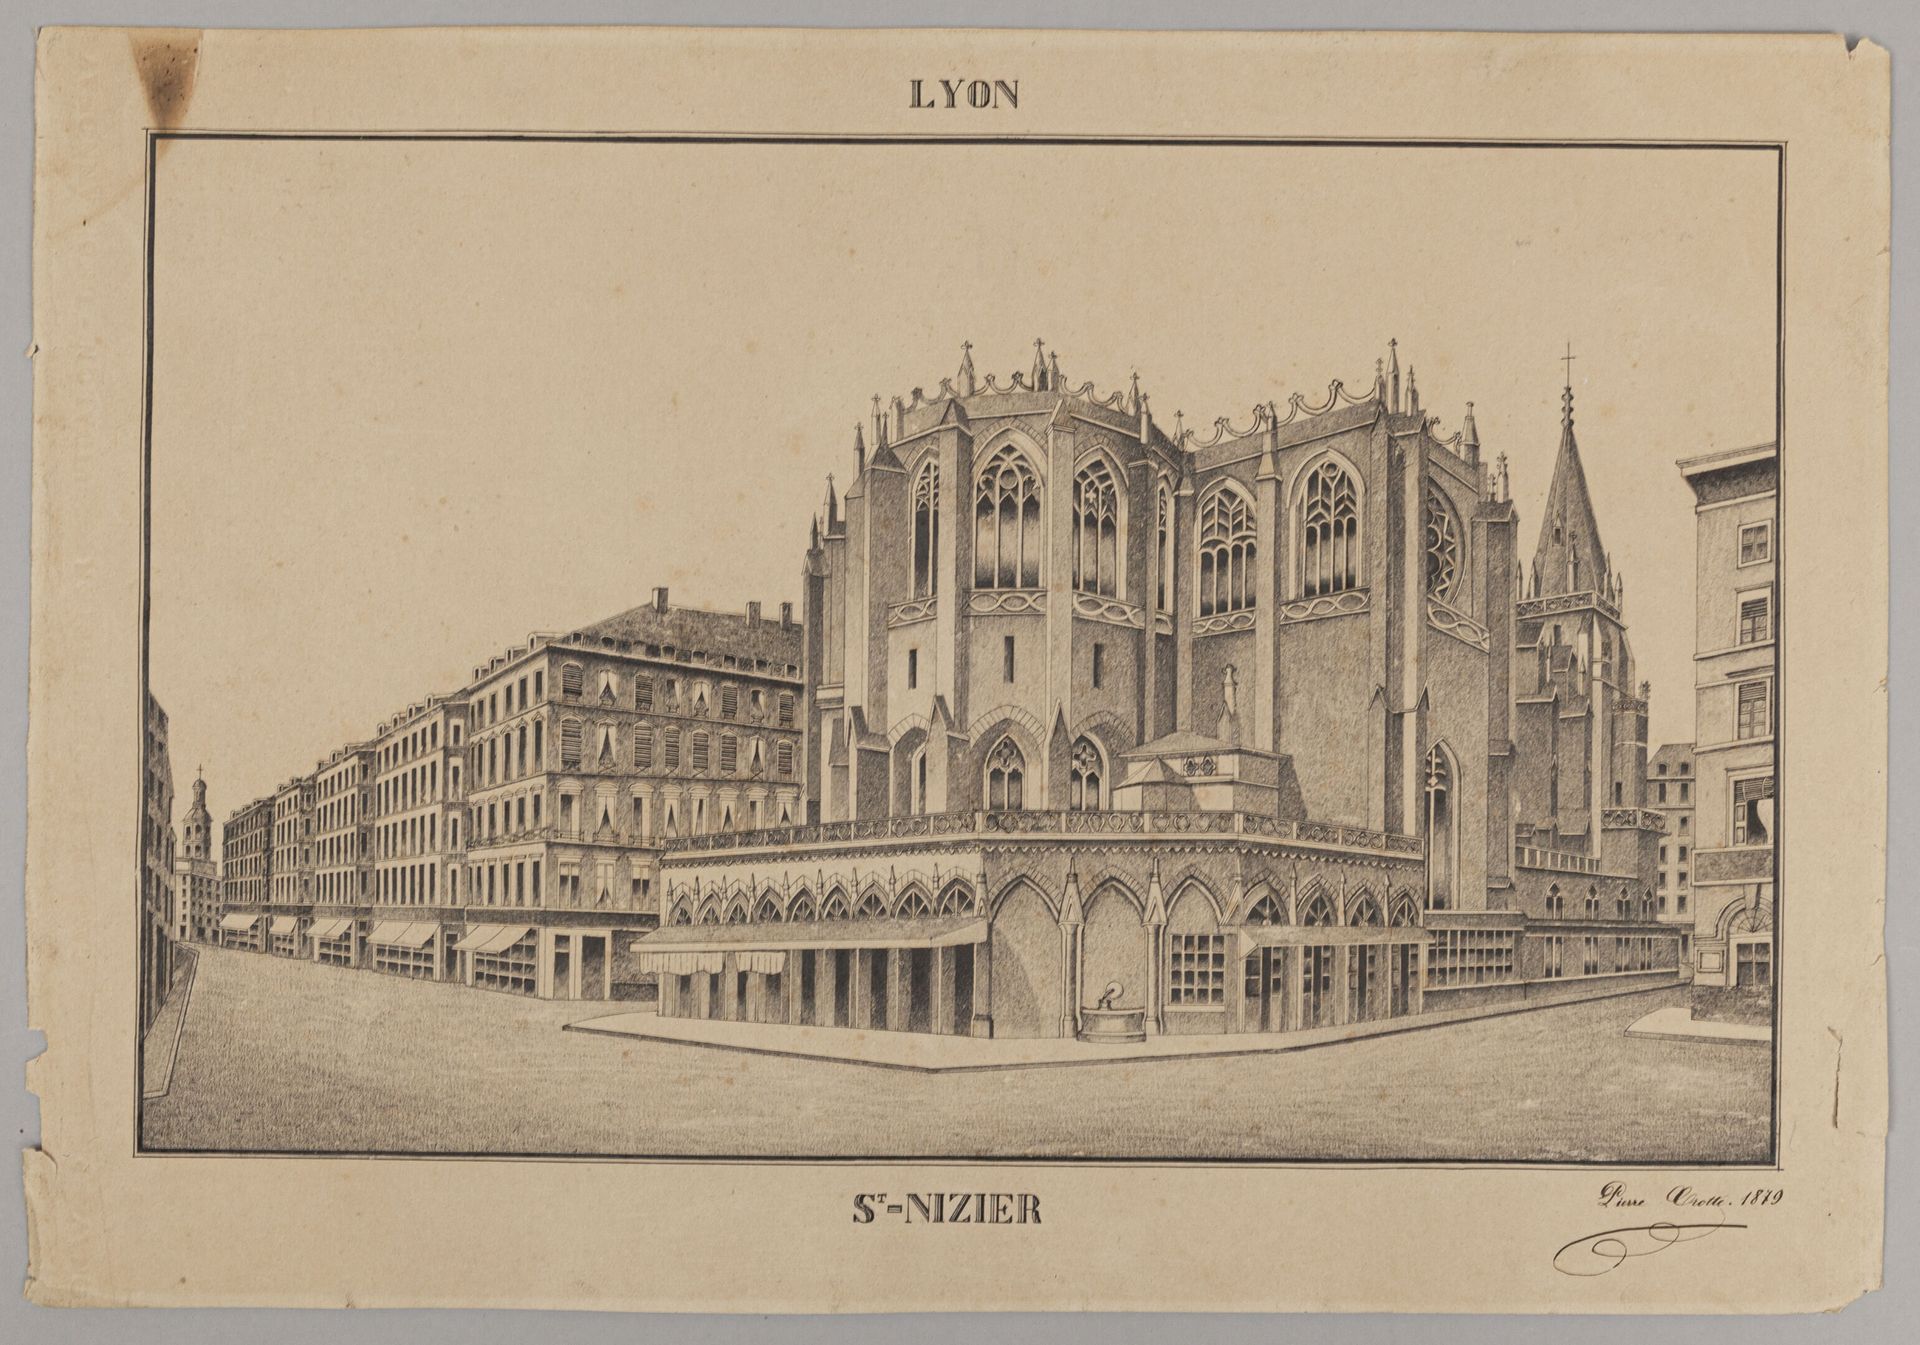 Null Escuela de Lyon, finales del siglo XIX

Vista de la Iglesia de San Nizier

&hellip;